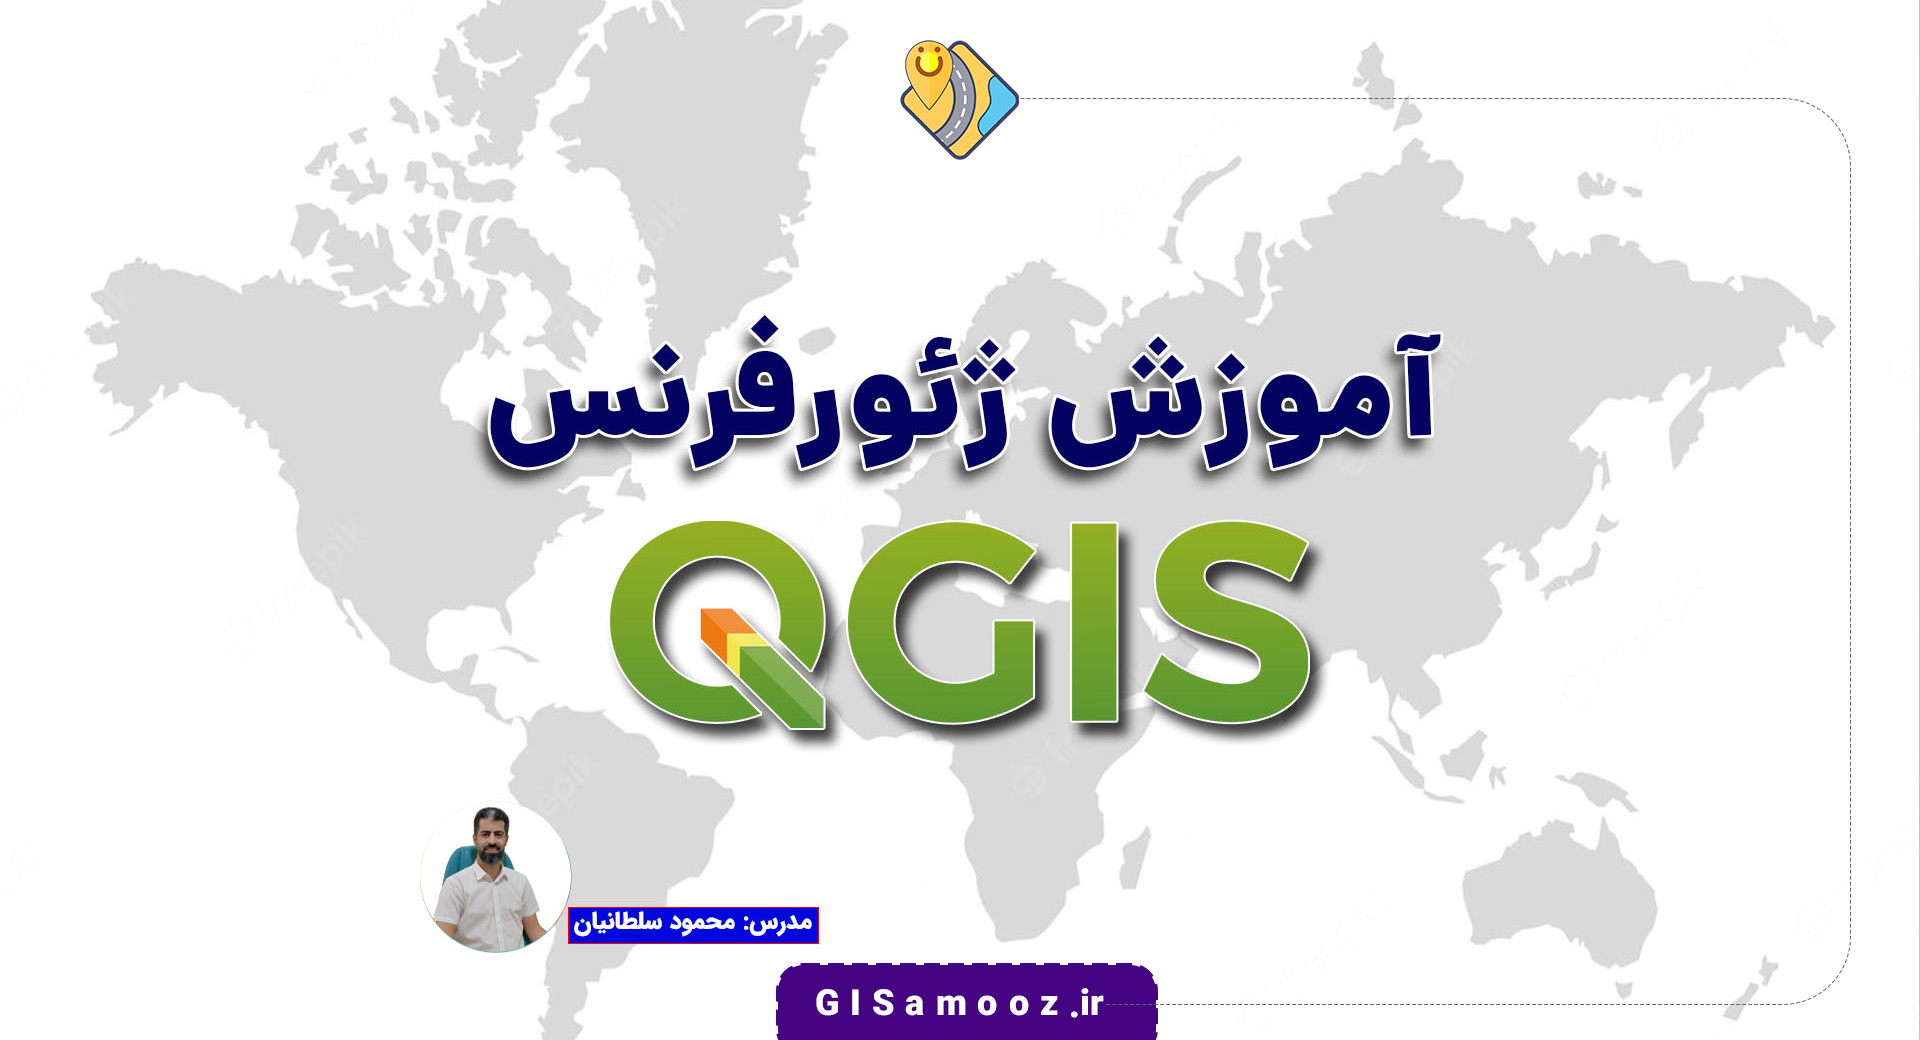 آموزش ژئورفرنس در QGIS